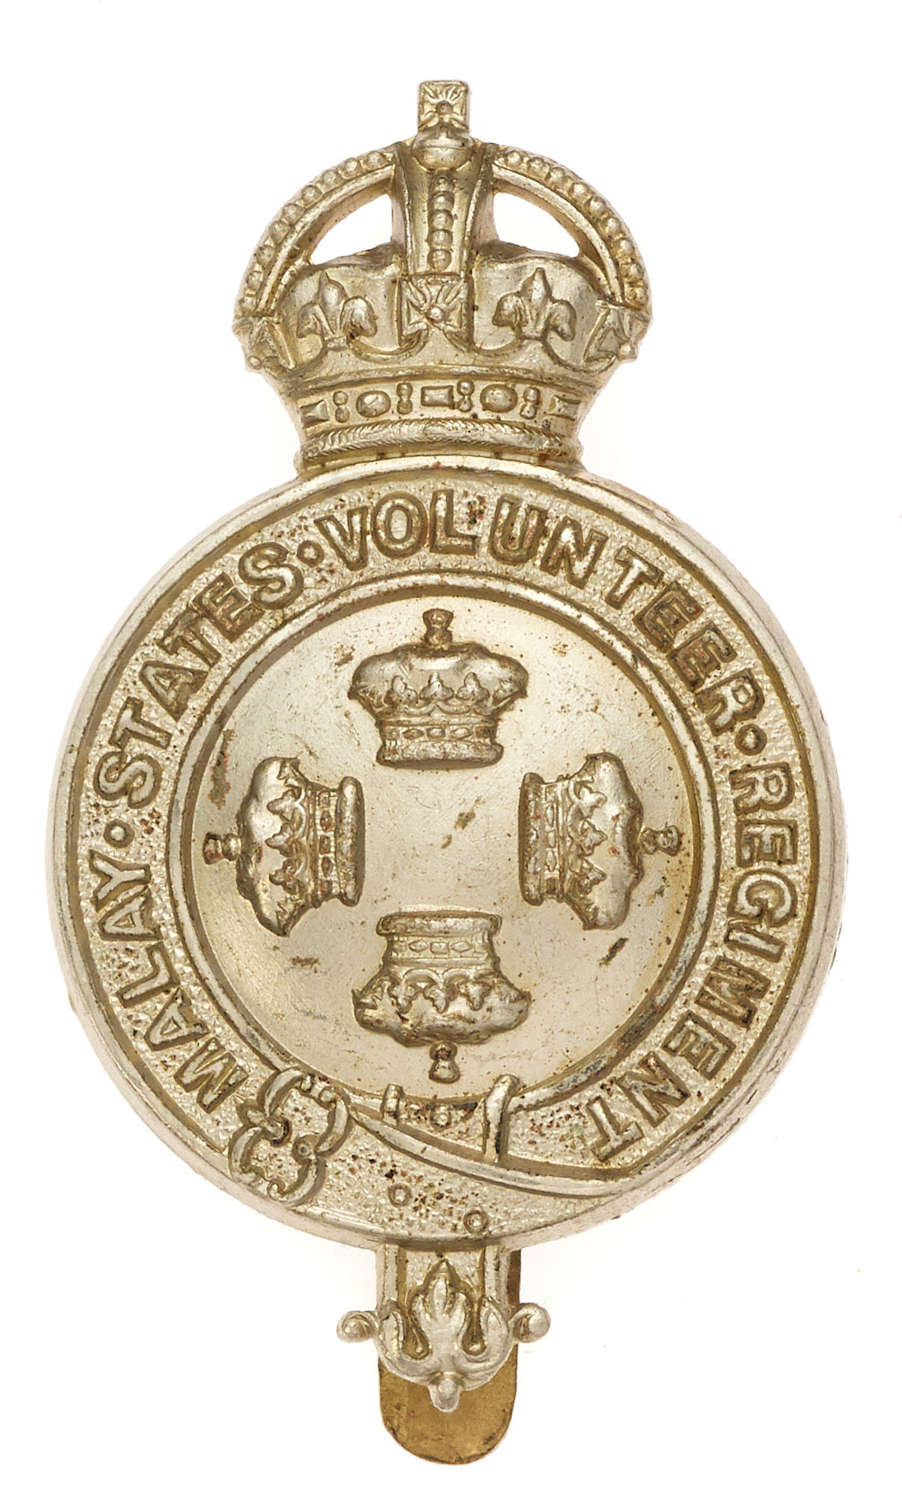 Malay States Volunteer Regiment cap badge c1921-36